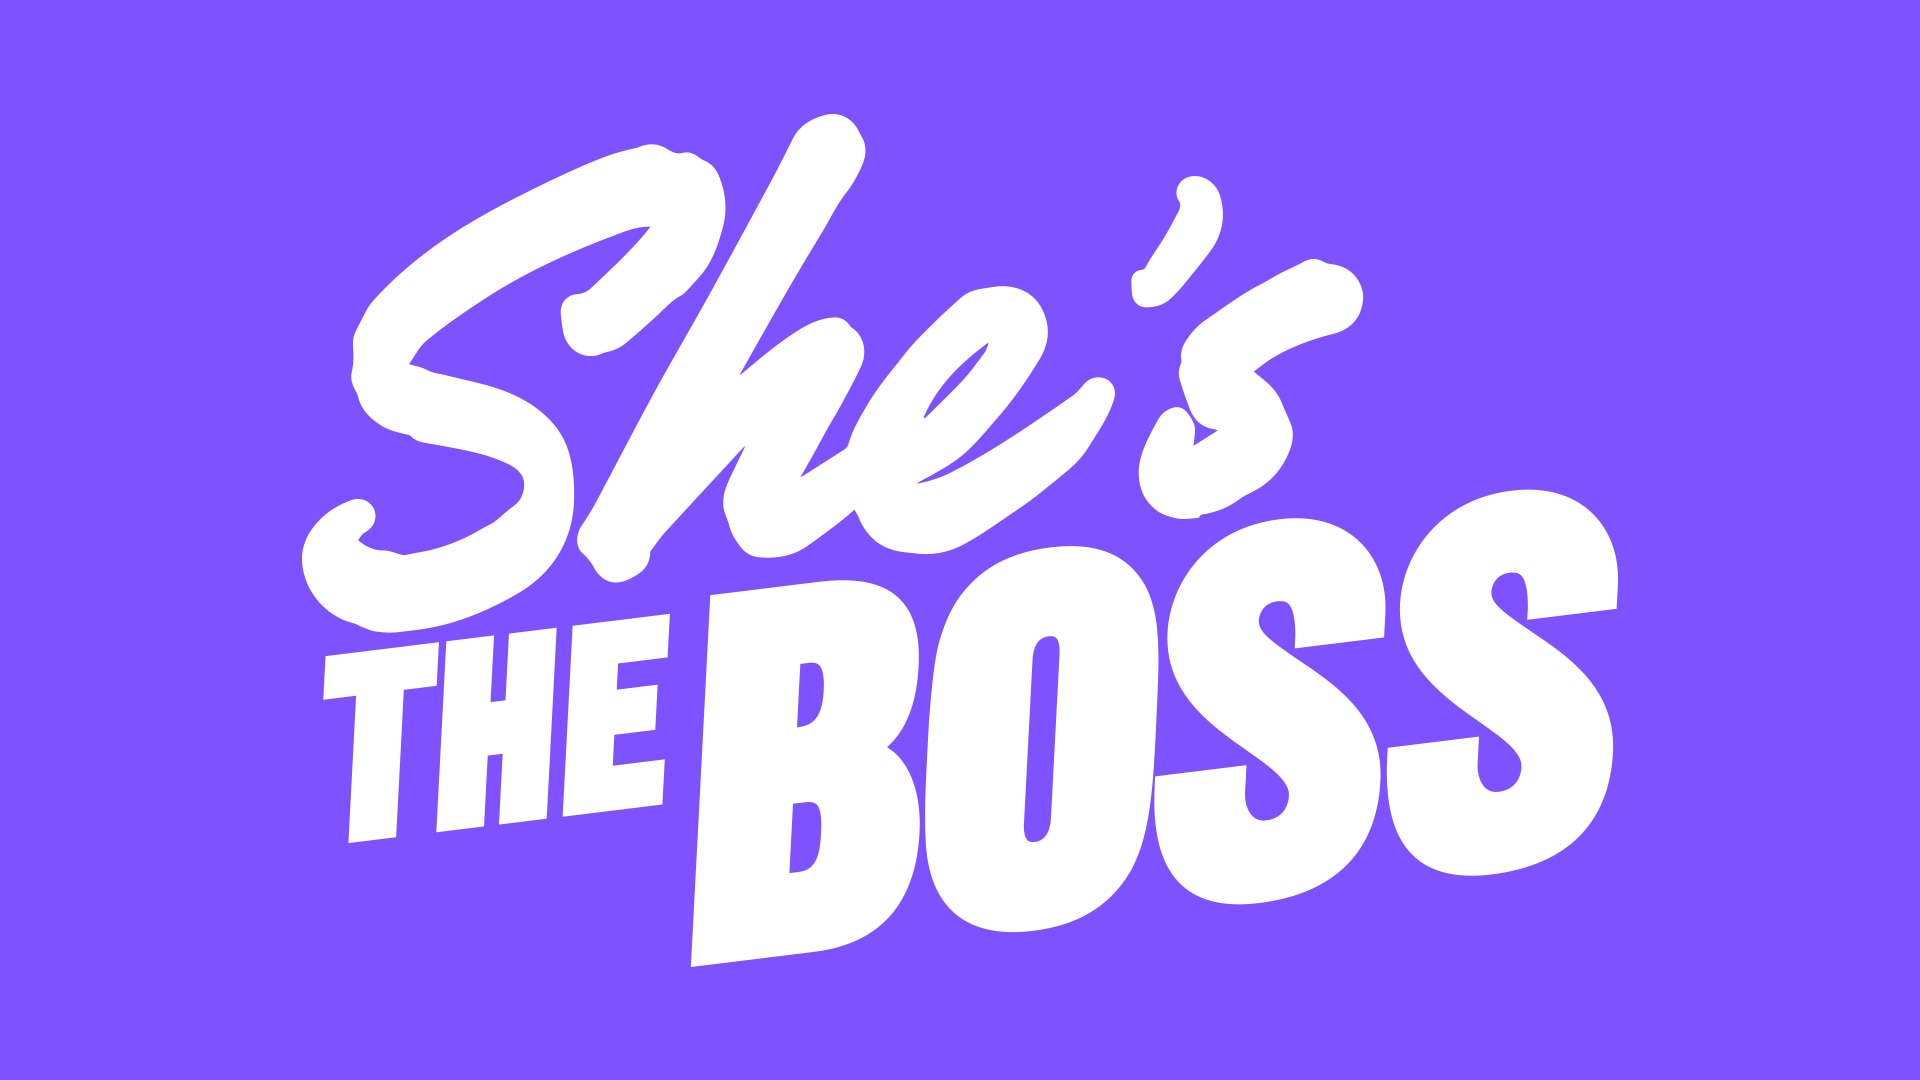 She's Boss -